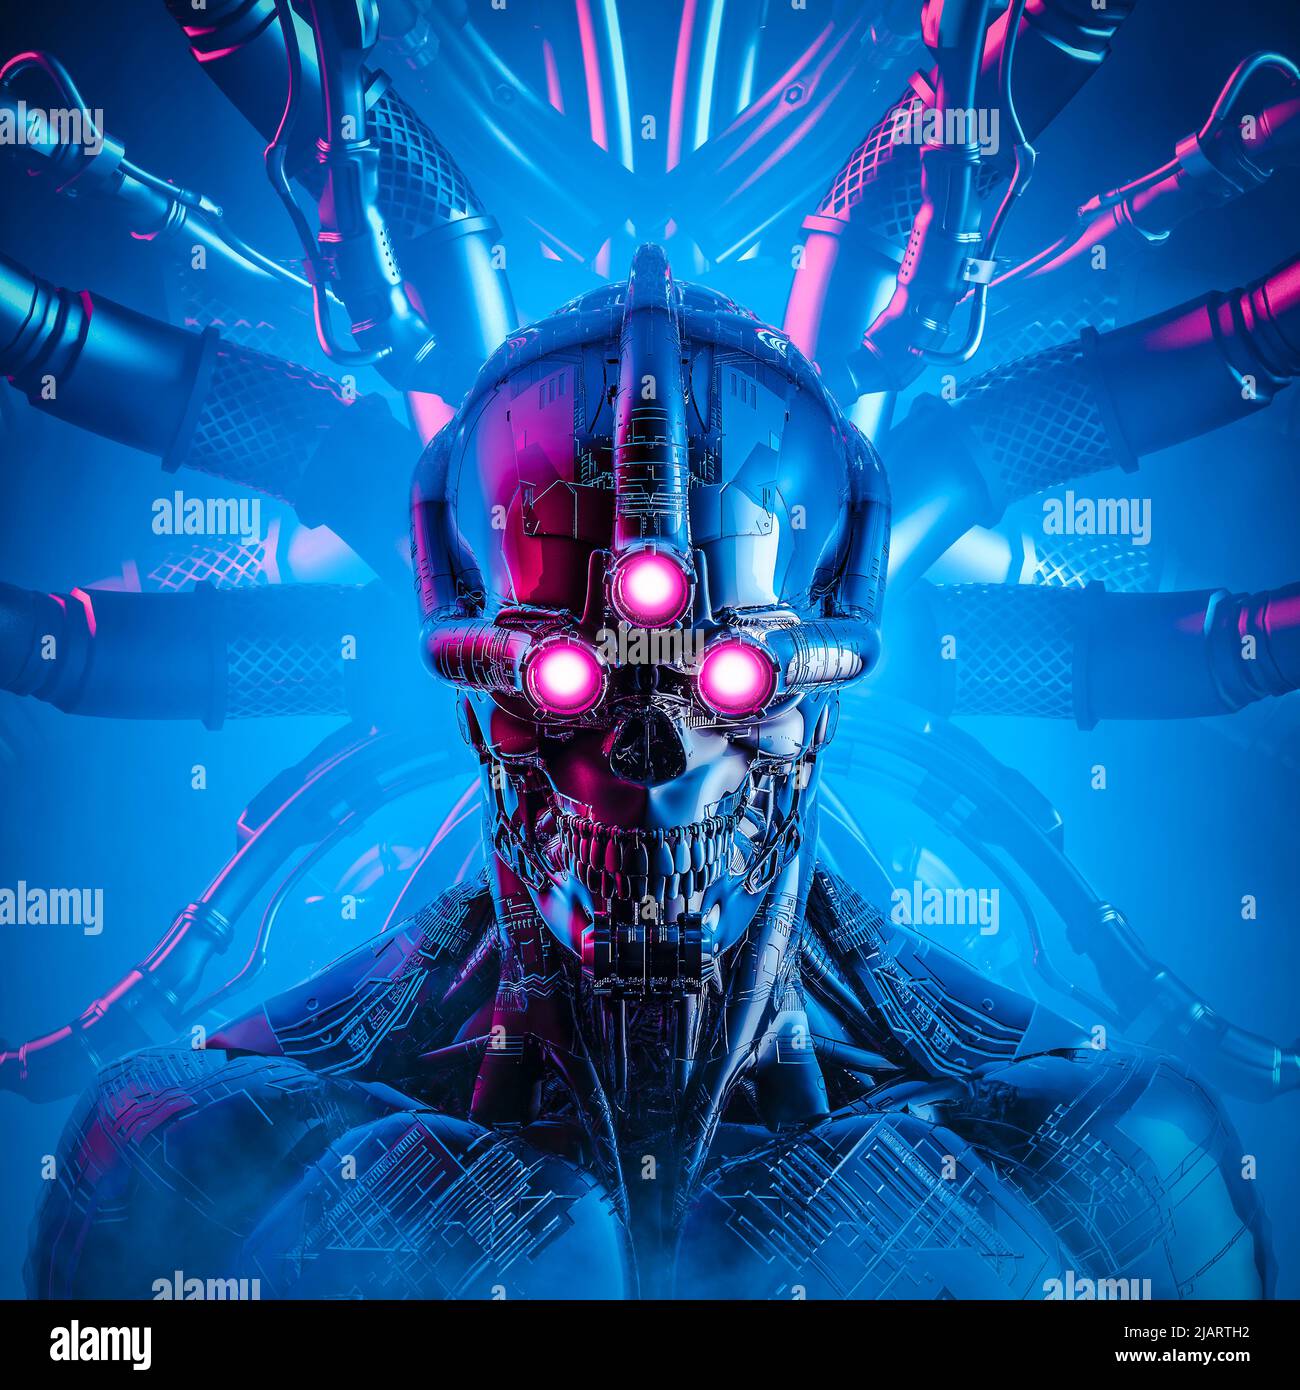 Triclops intelligenza artificiale - 3D illustrazione della fantascienza cyberpunk cranio affrontato tre occhi cyborg collegato al nucleo del computer Foto Stock